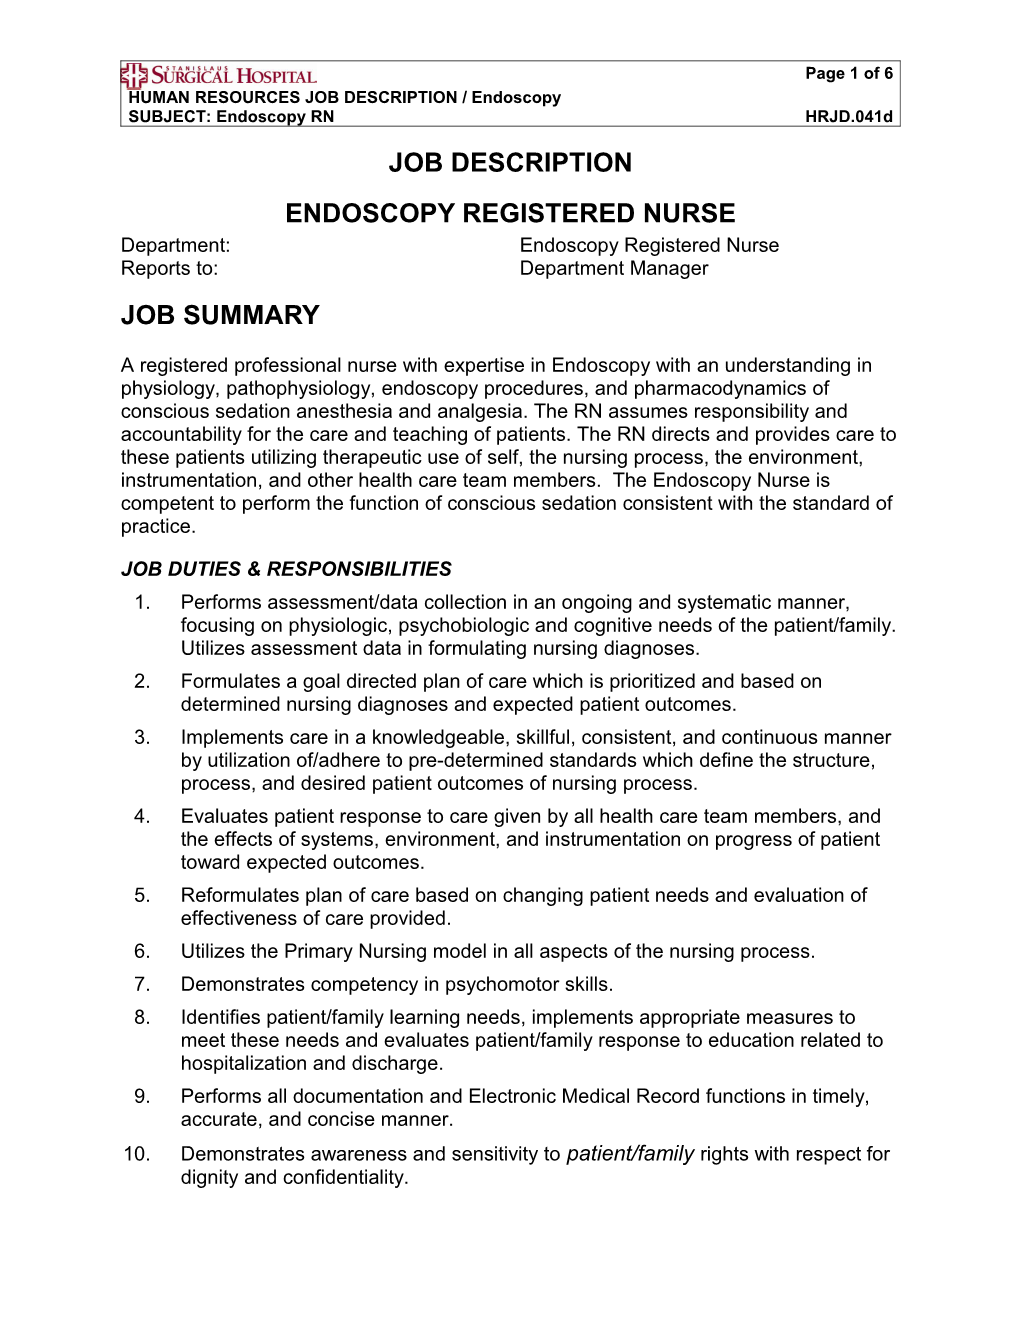 HUMAN RESOURCES JOB DESCRIPTION / Endoscopy